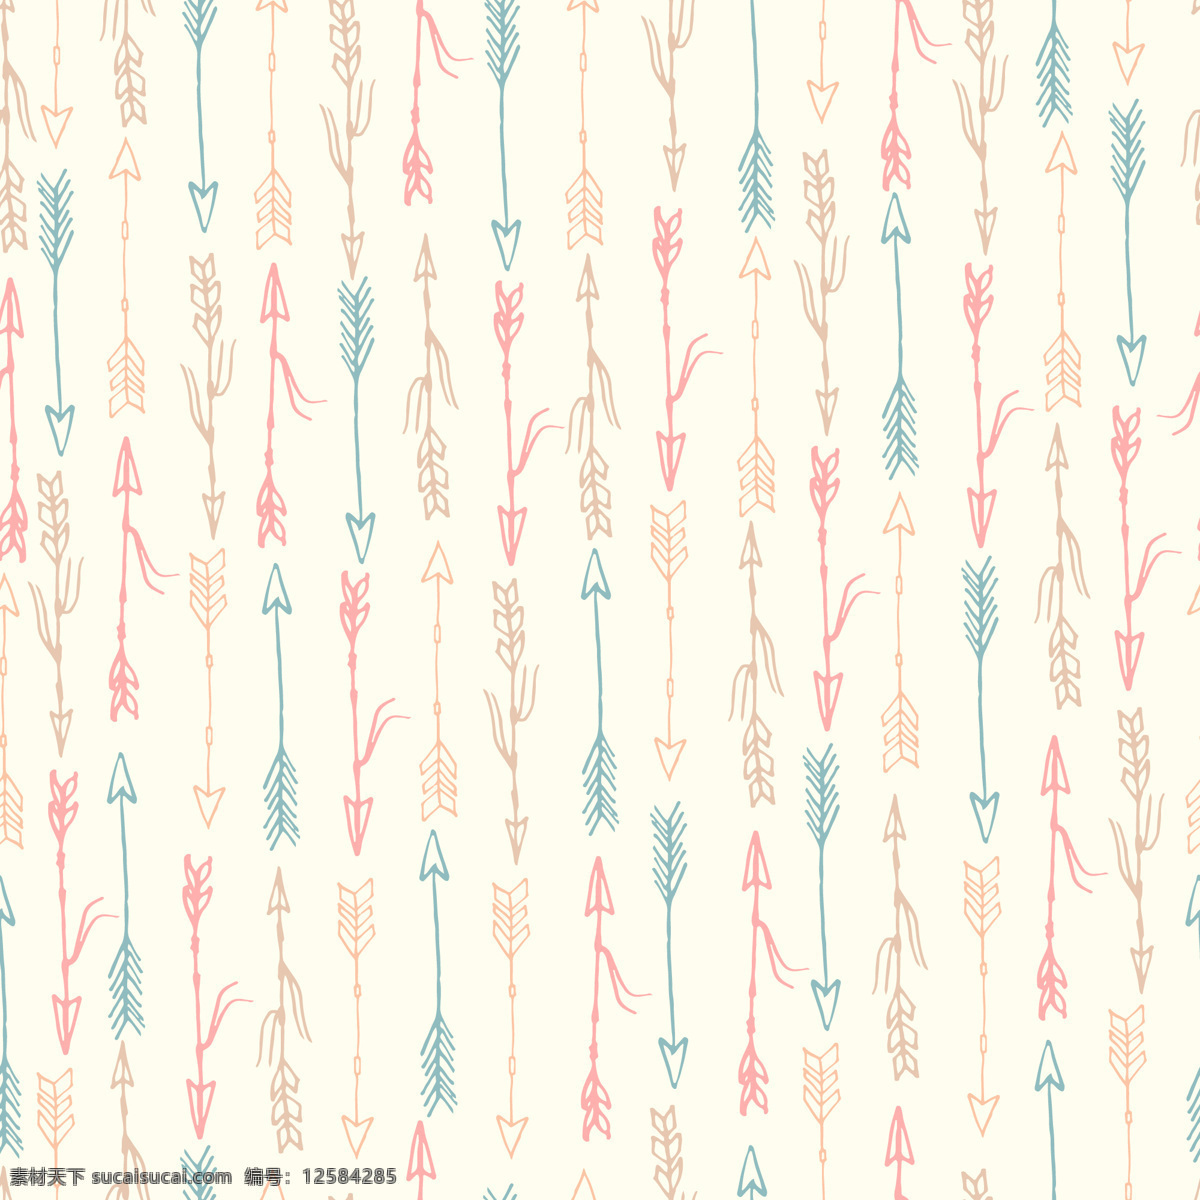 日 系 清新 粉色 弓箭 壁纸 图案 装饰设计 壁纸图案 蓝色弓箭 粉色弓箭 手绘风格 小丝带